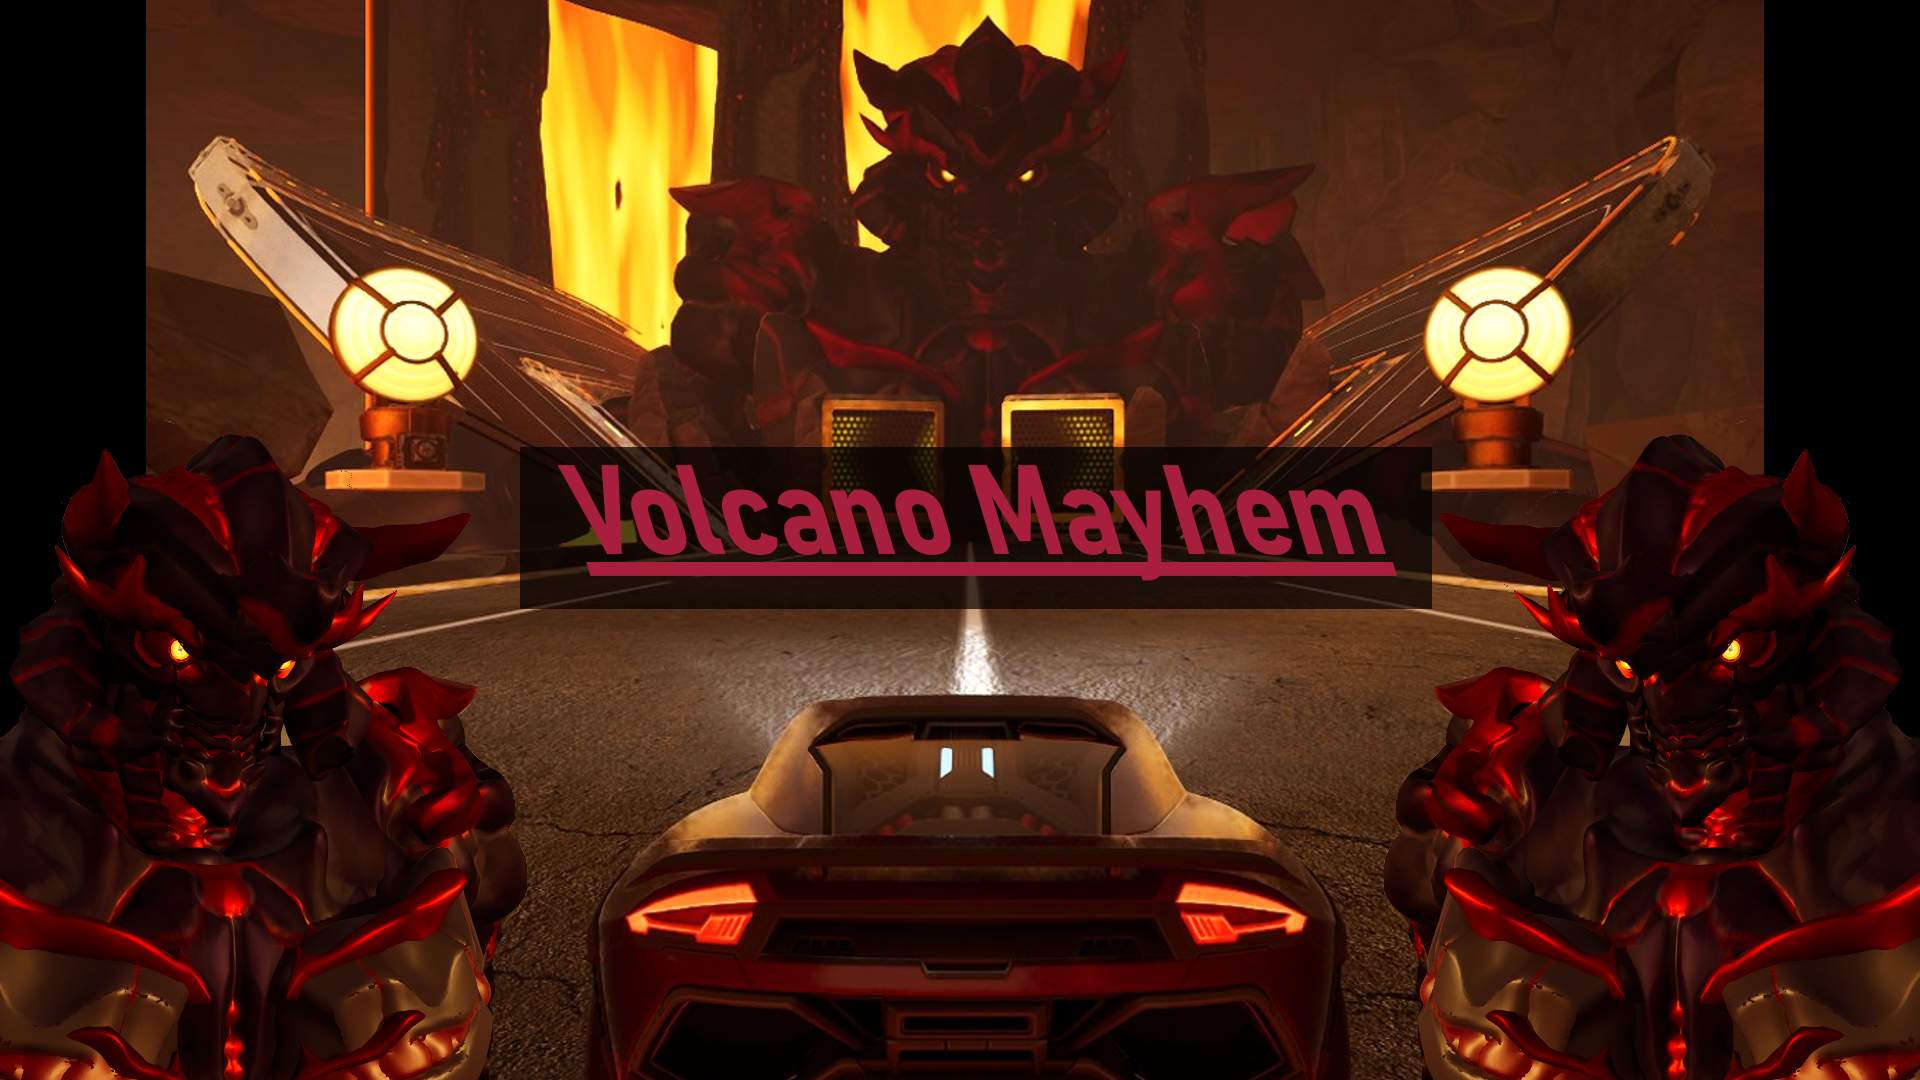 Volcano Mayhem